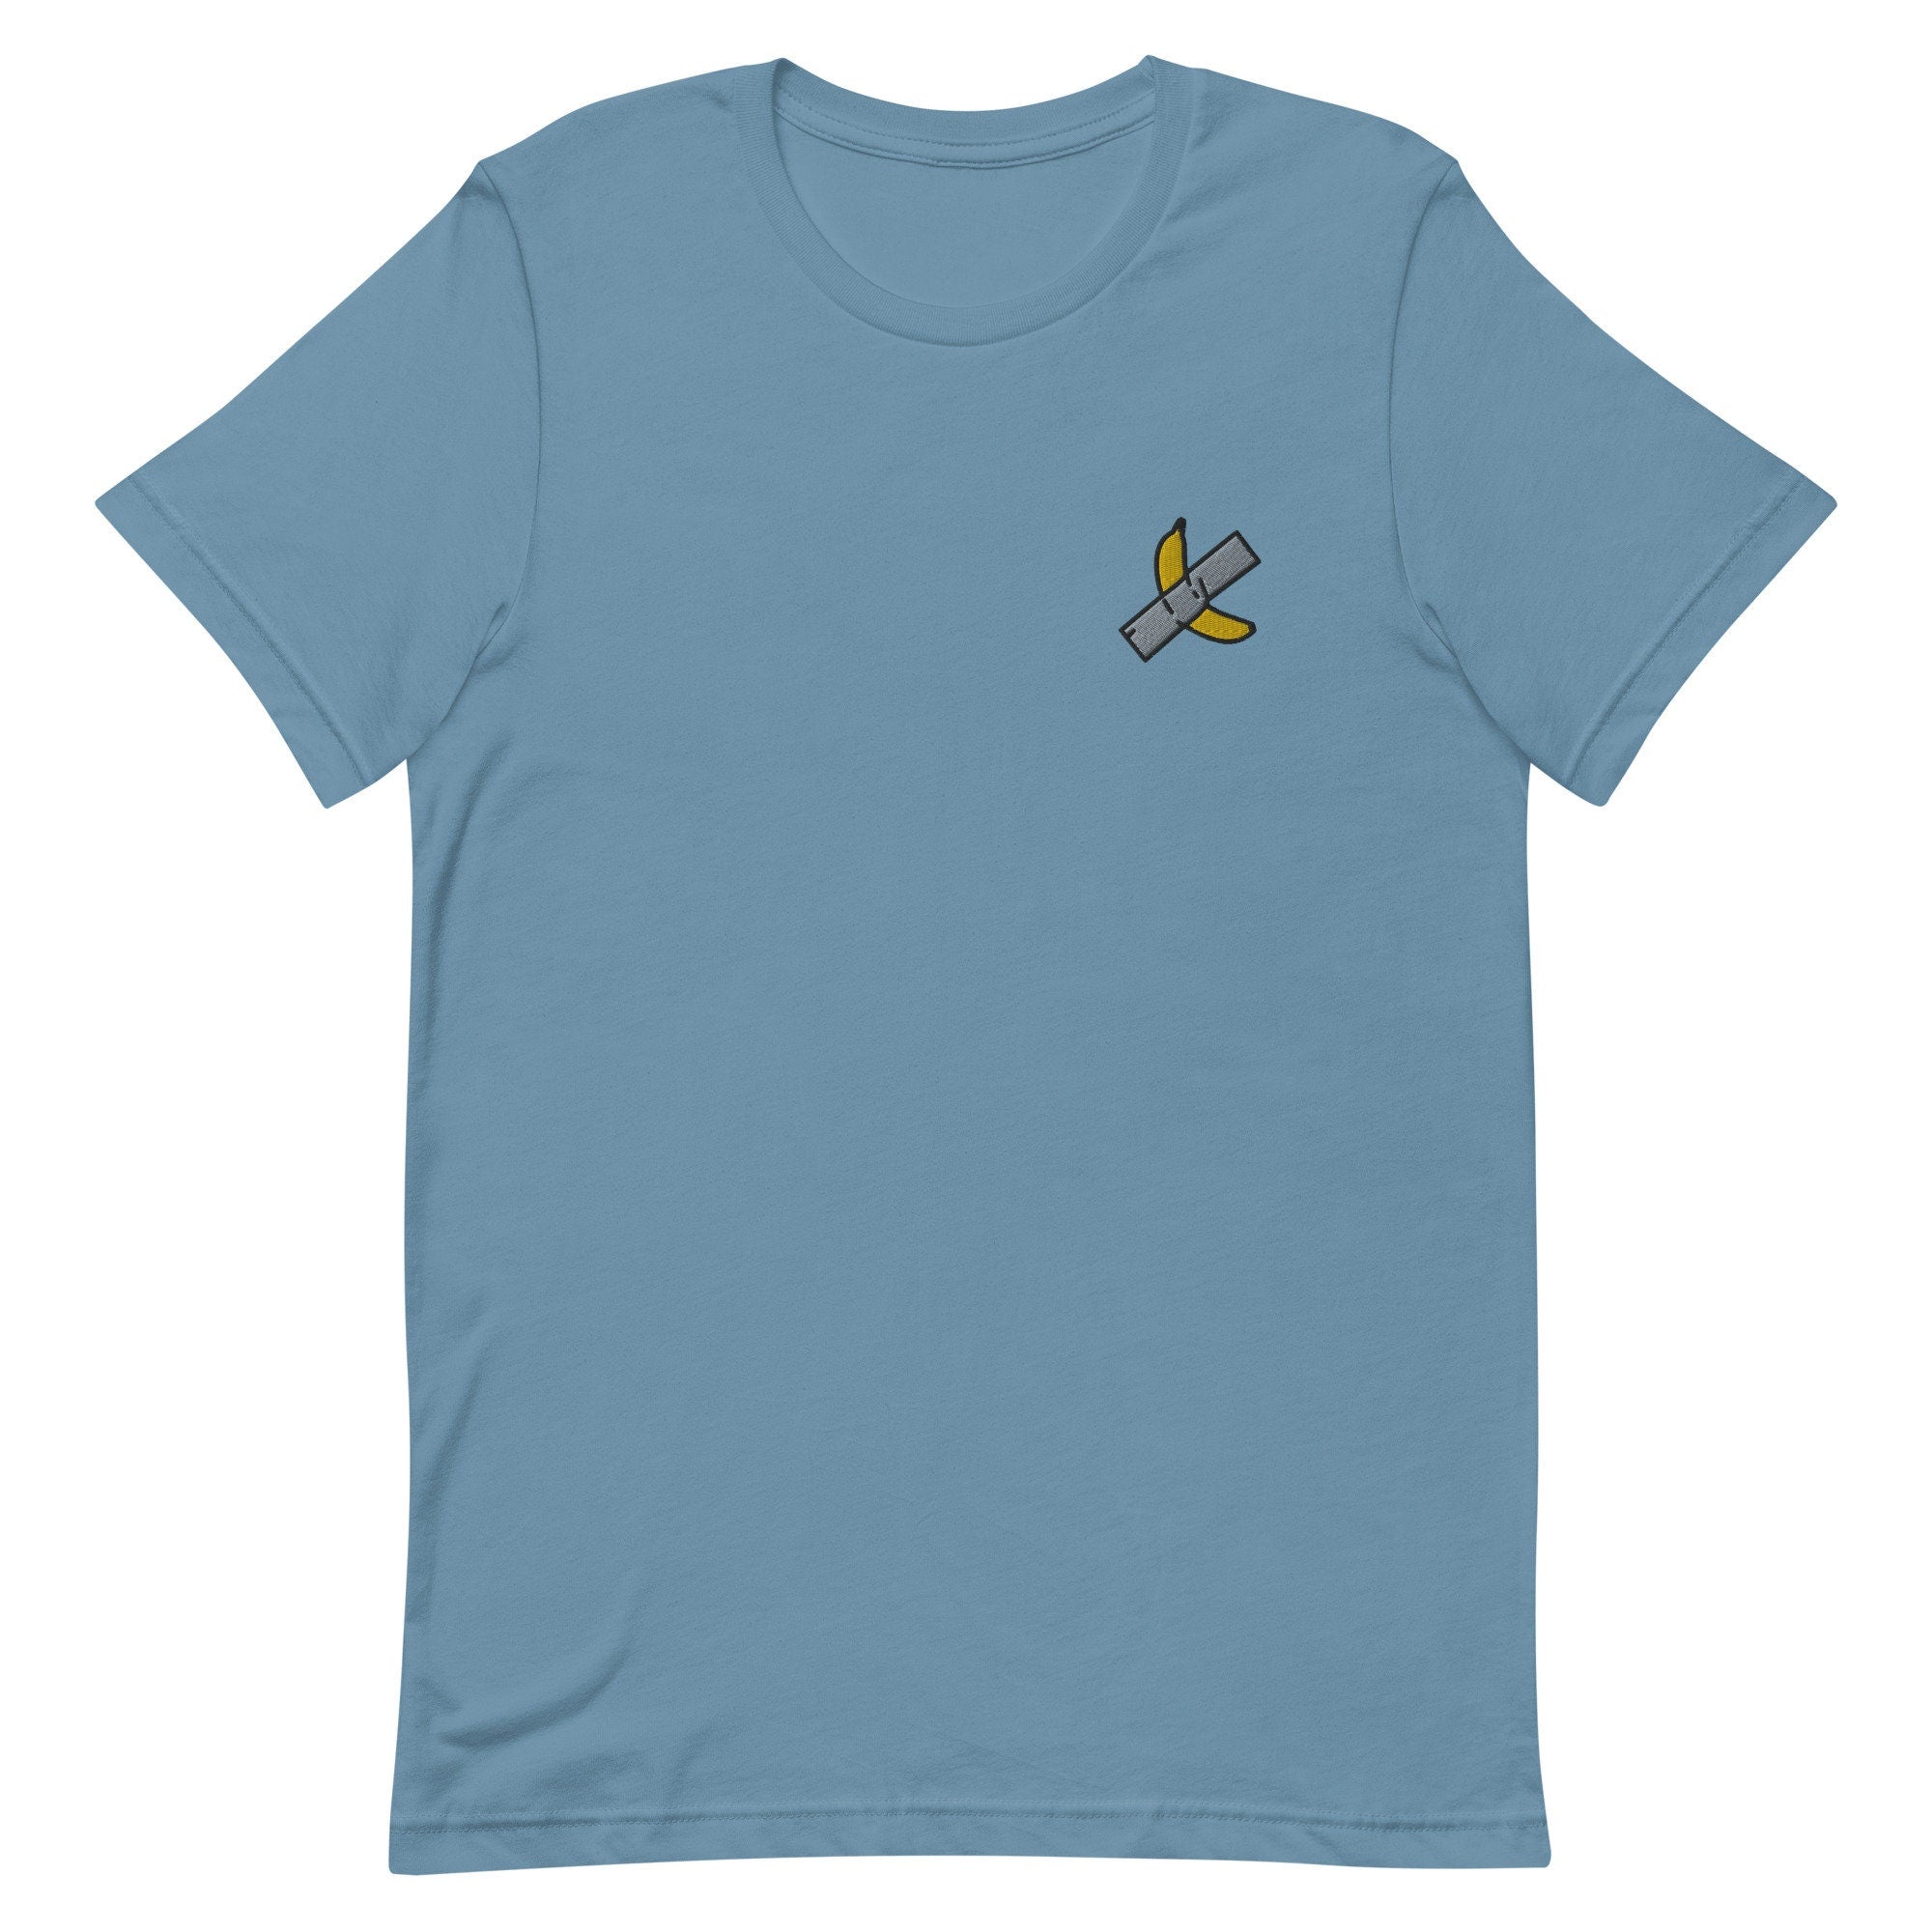 Duct Tape Banana Premium Men's T-Shirt, Embroidered Men's T-Shirt Gift for Boyfriend, Men's Short Sleeve Shirt - Multiple Colors